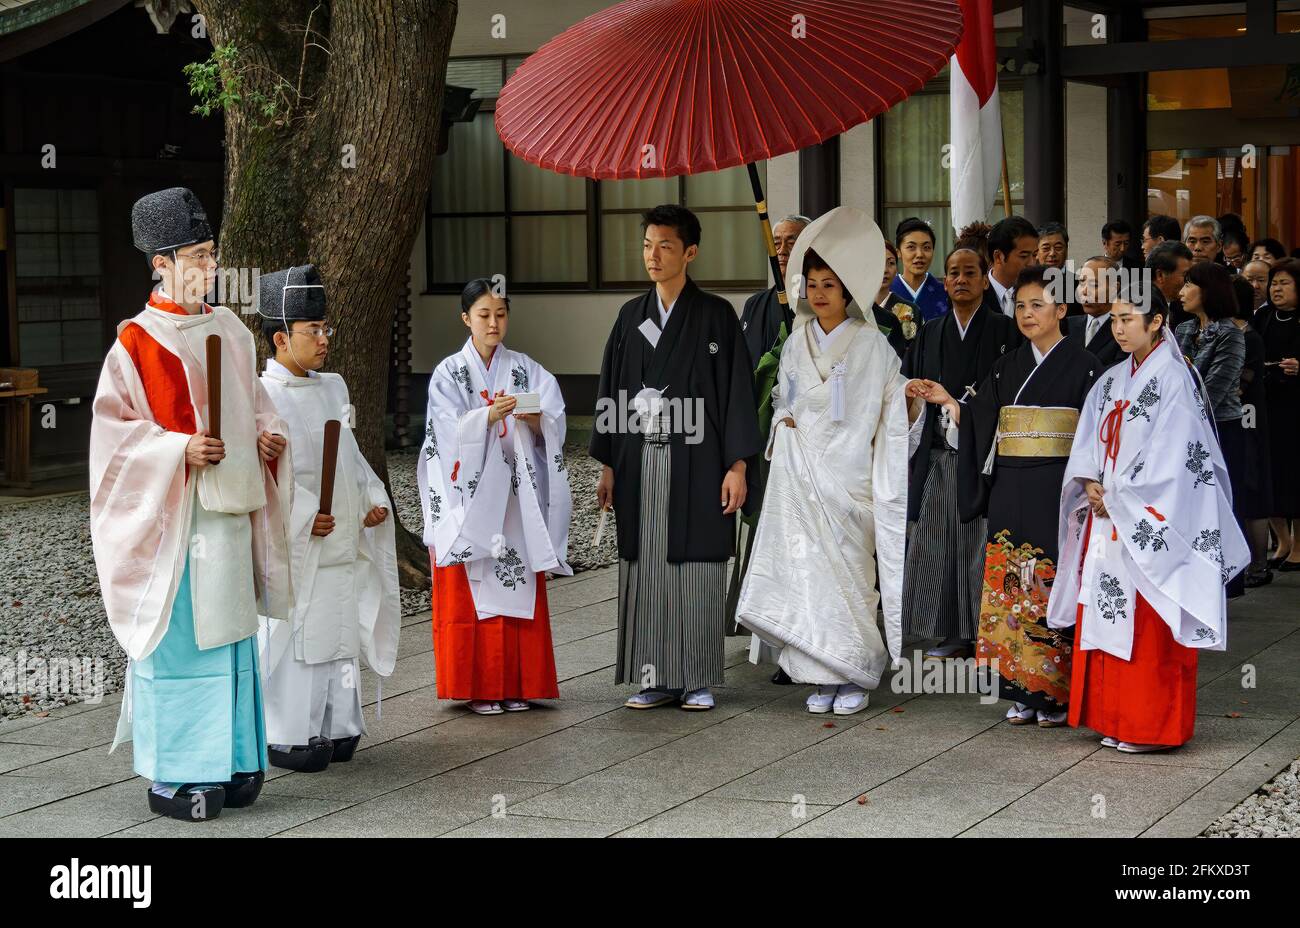 Tokio, Japan - 19. Juli 2009: Japanische Hochzeitszeremonie im Meiji Jingu-Schrein. Meiji Jingu Schrein ist ein aktiver Schrein, es ist möglich, Hochzeit zu sehen Stockfoto